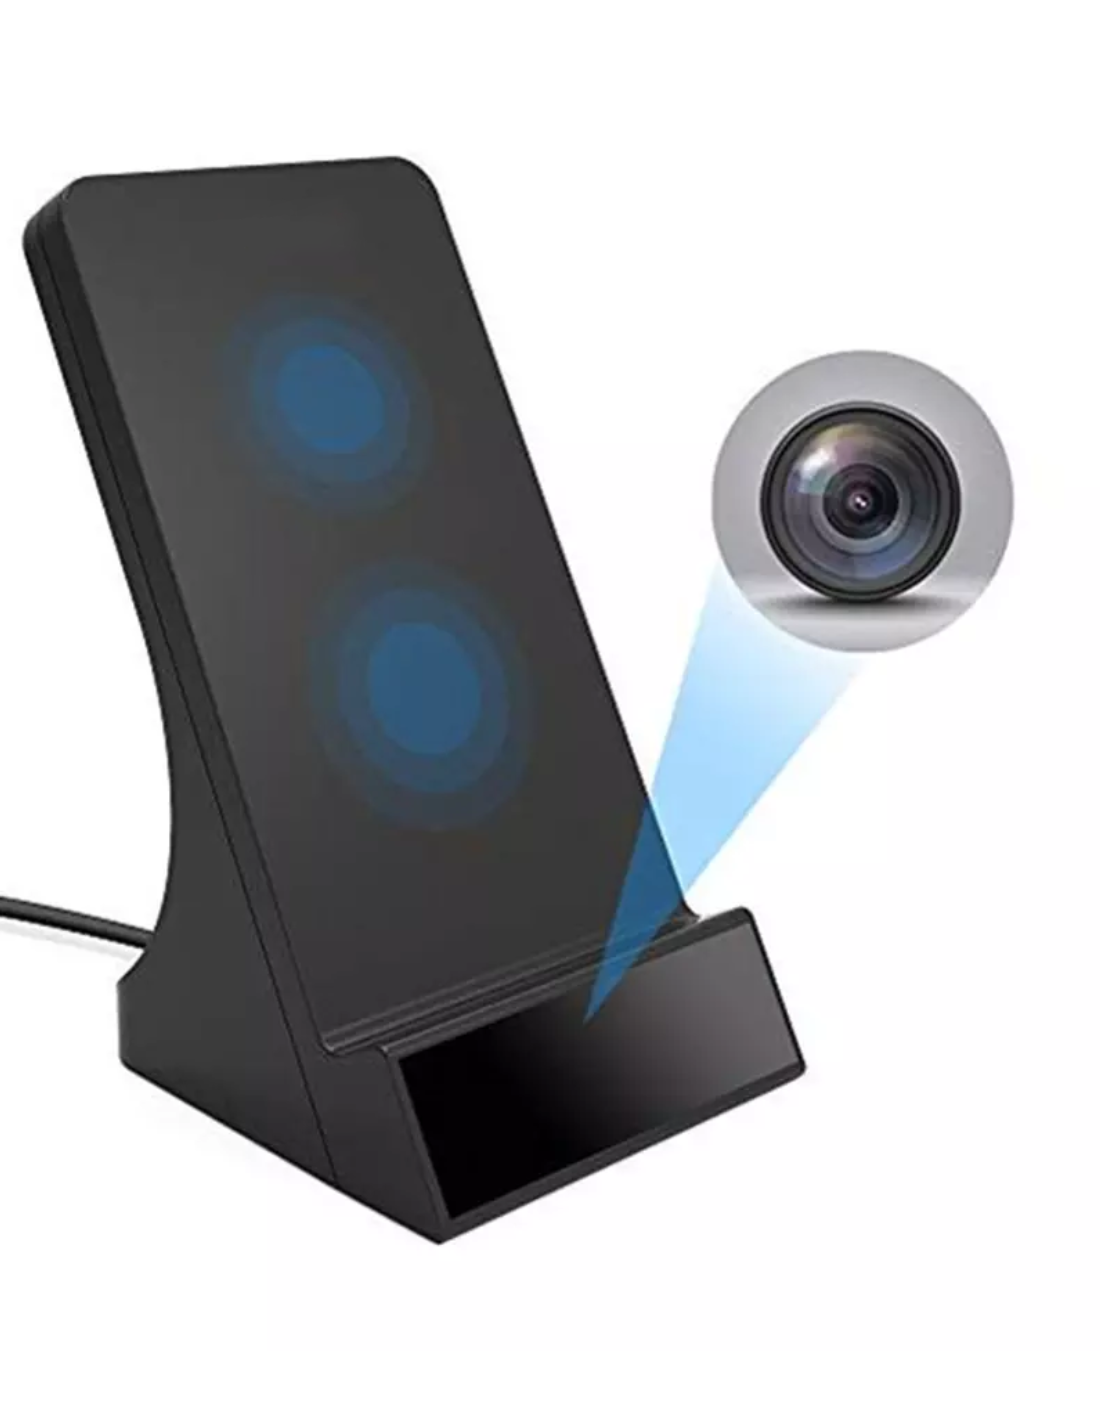 Station de charge - Caméra espion Wifi - Vision à distance en direct